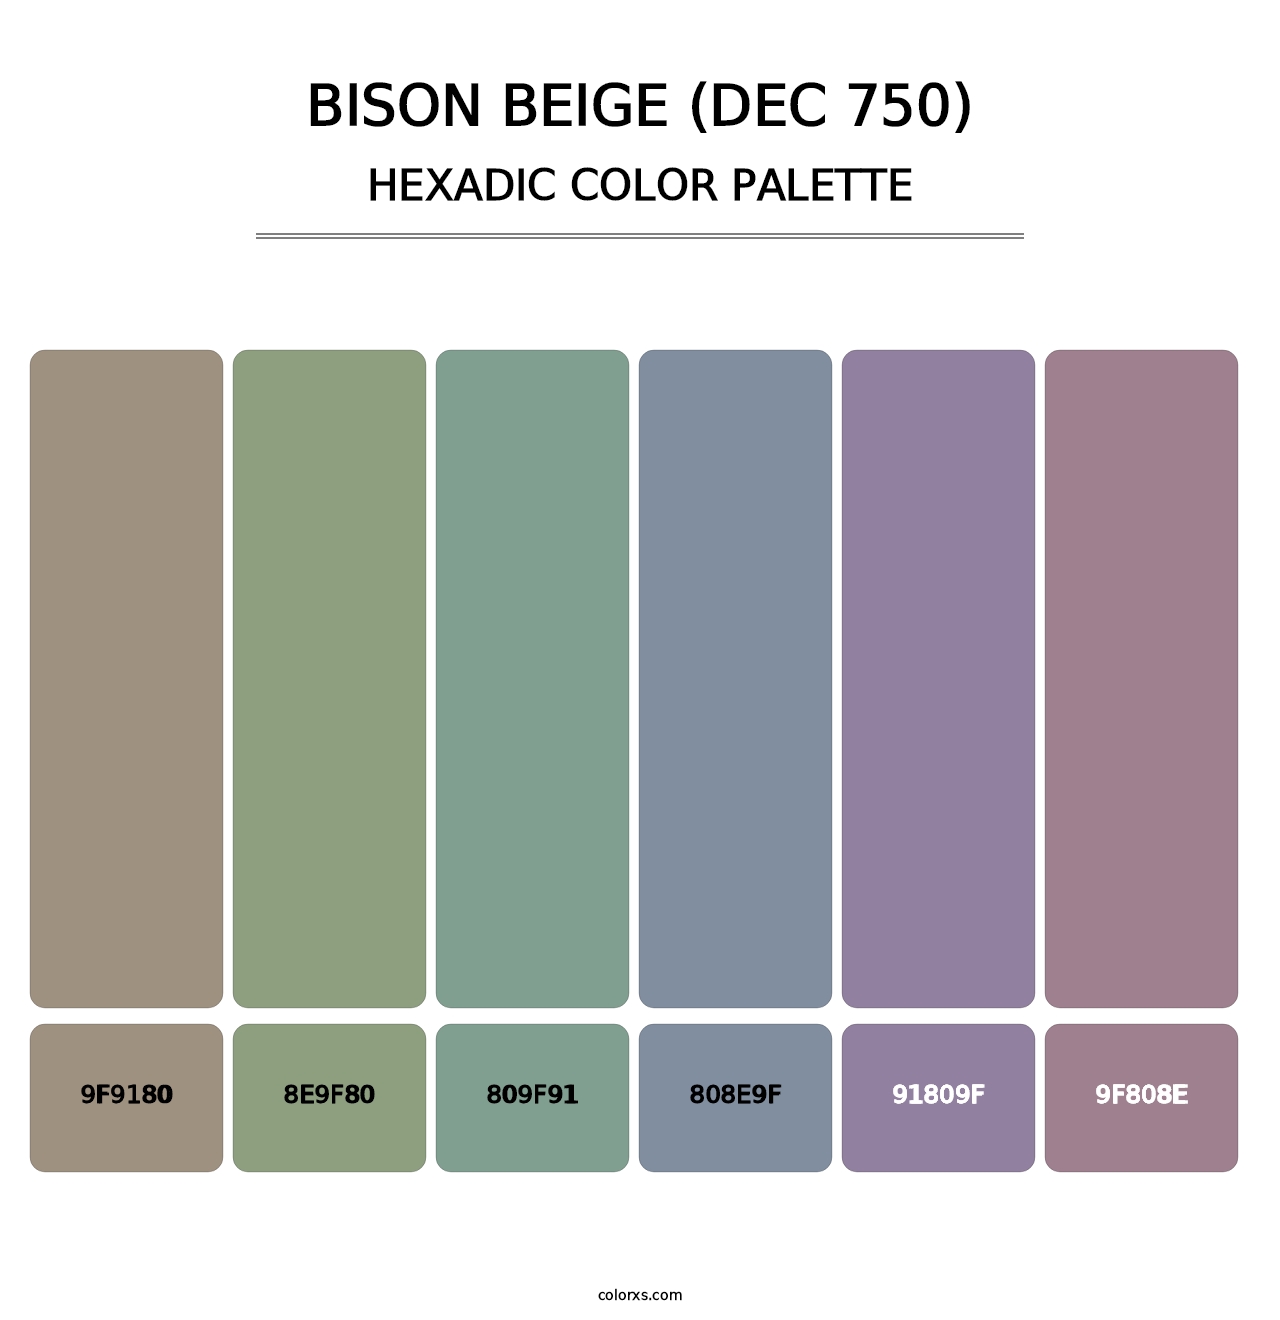 Bison Beige (DEC 750) - Hexadic Color Palette